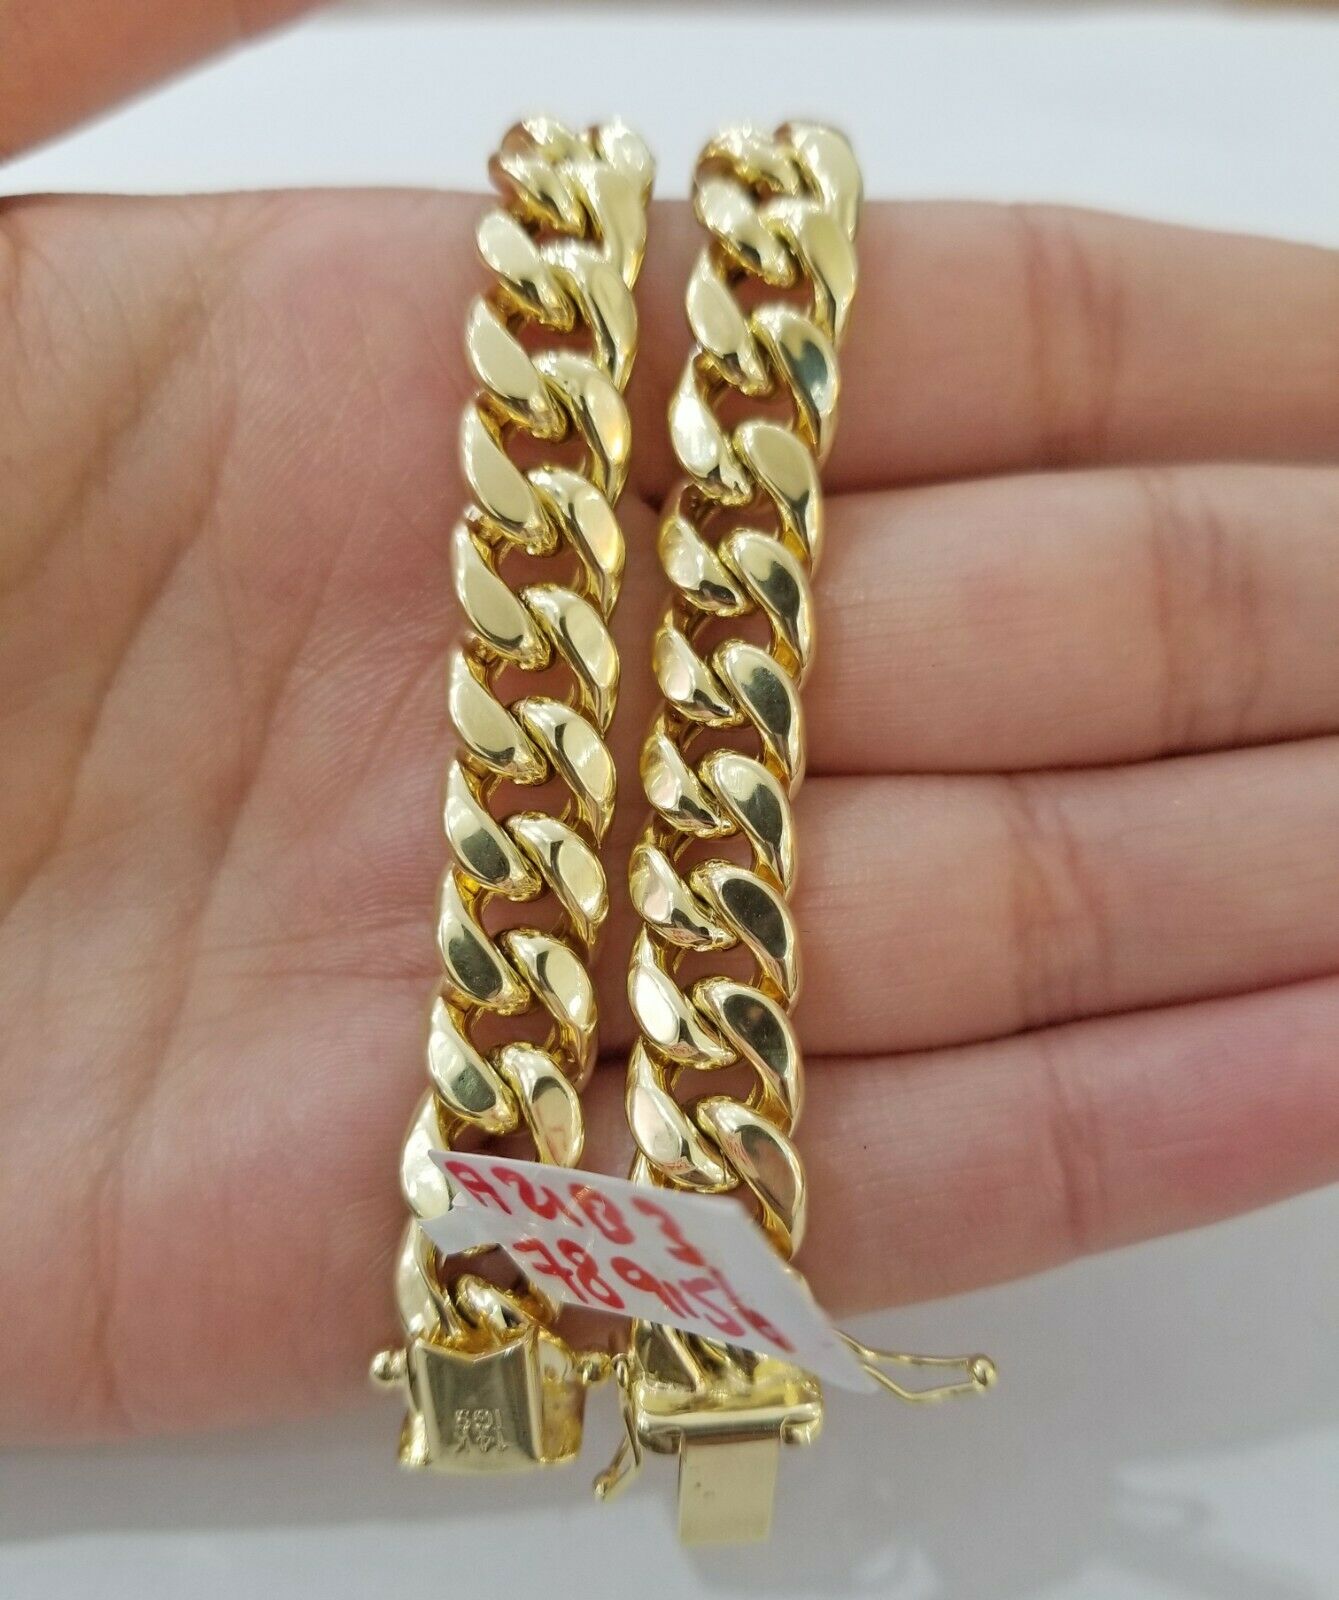 Real 14kt Gold Mens Bracelet Miami Cuban Link 11mm 9